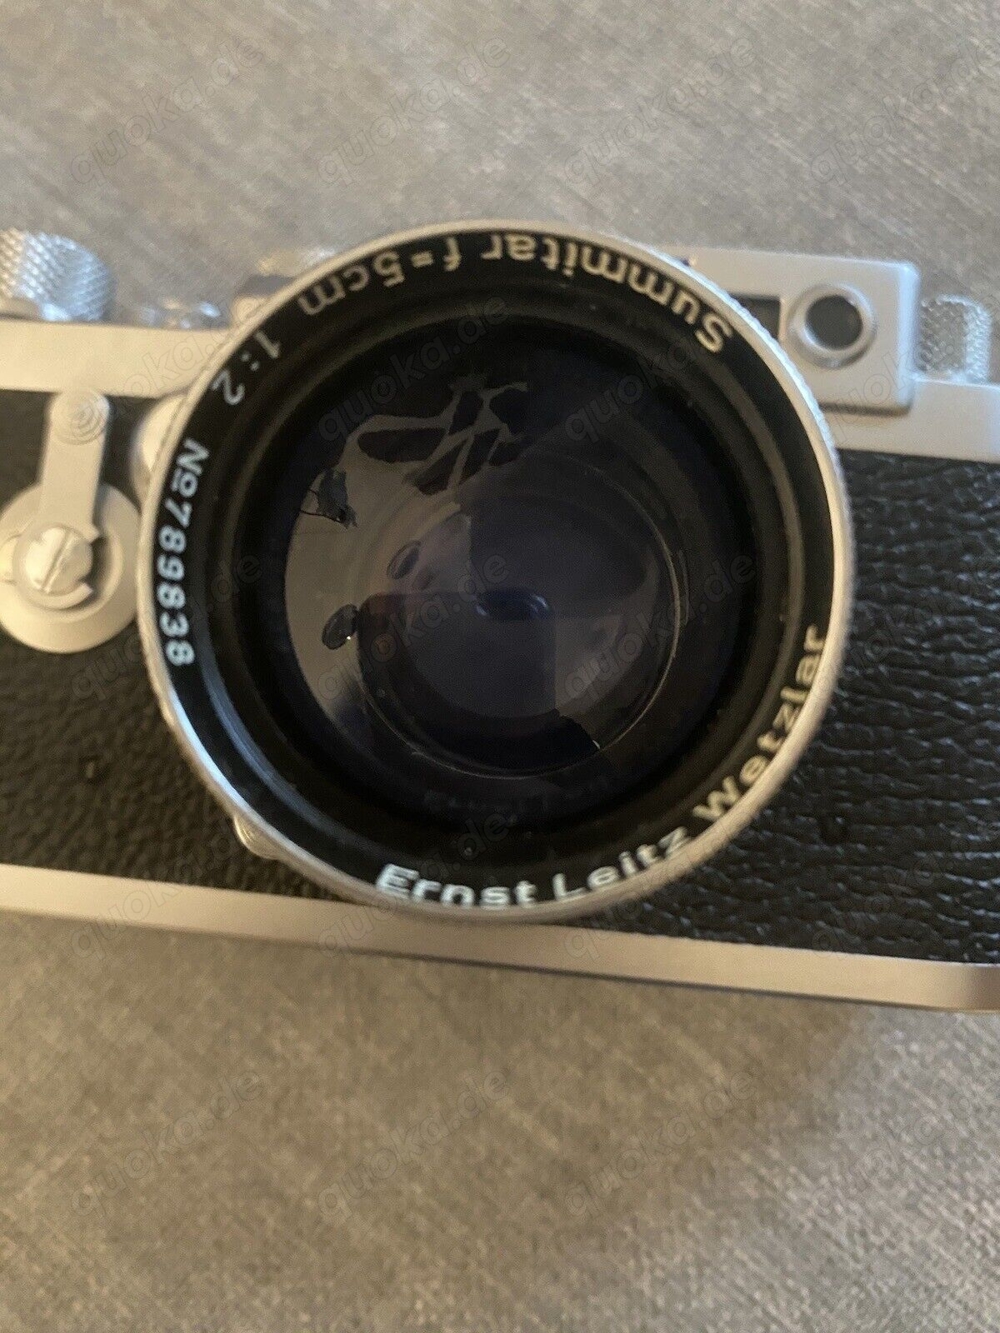 Leica IIIg, Bj. 1959, Nr. 906970 f = 5 cm 12 Analogkamera Top